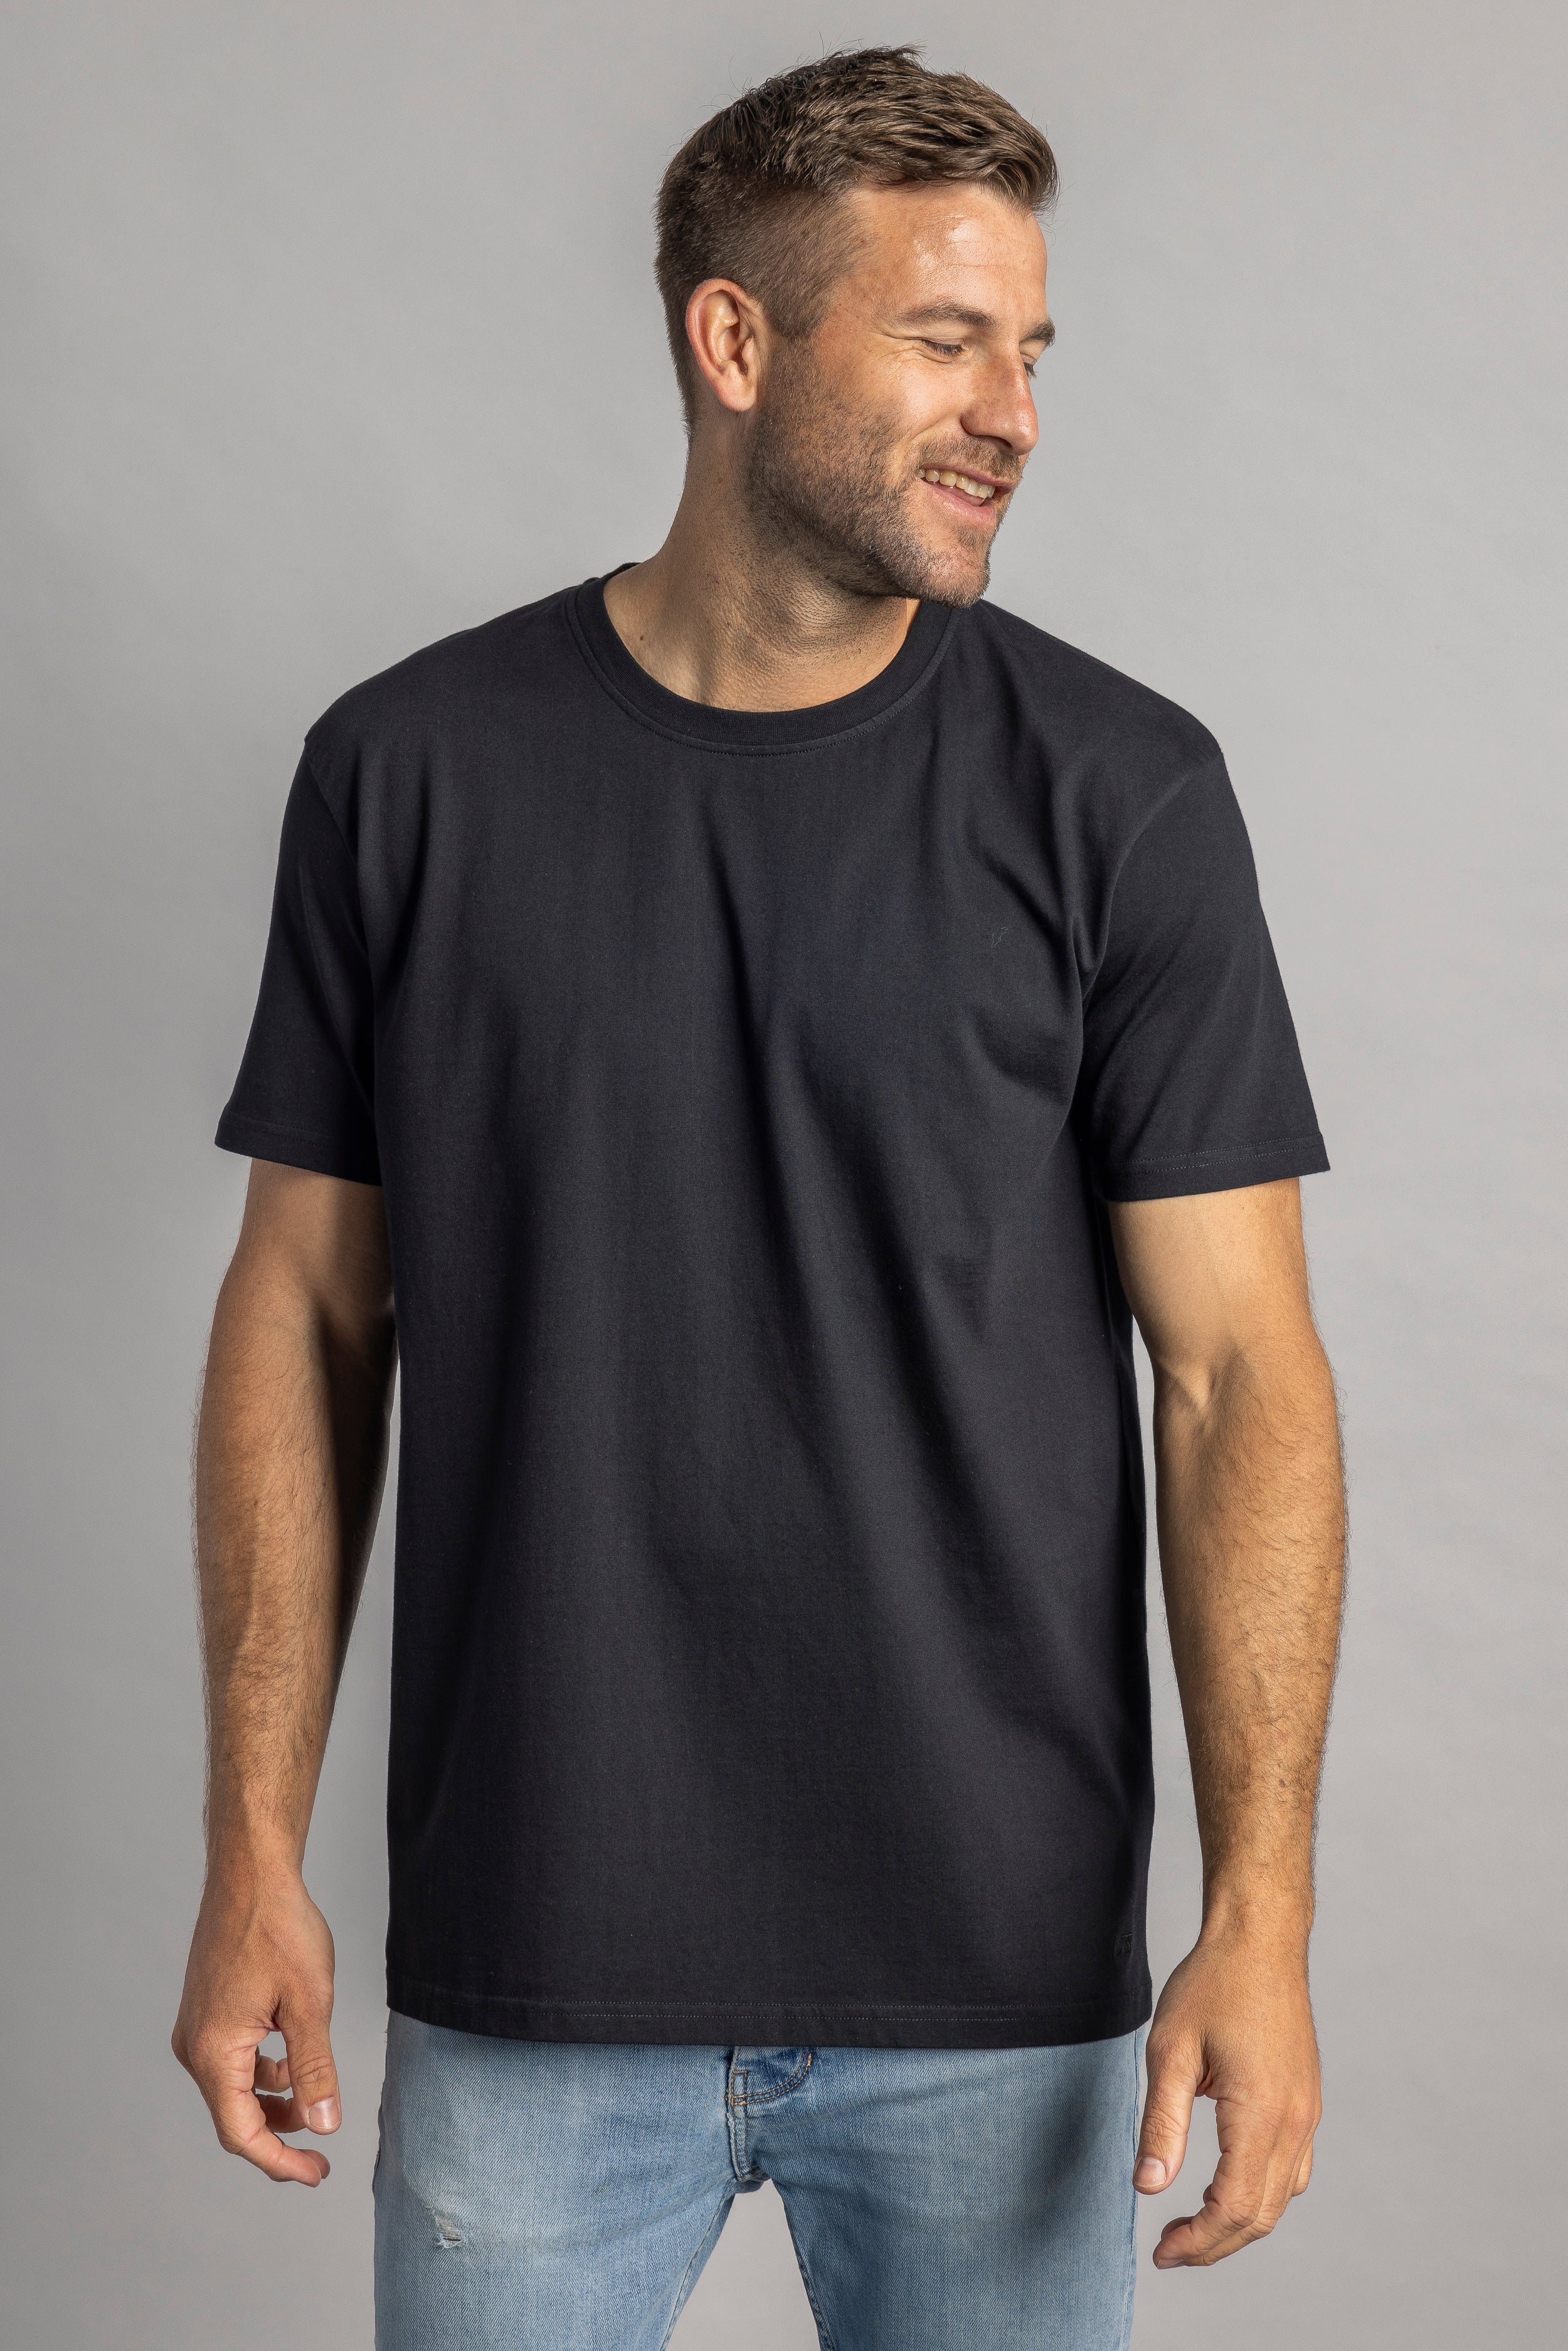 Schwarzes T-Shirt Premium Blank Standard aus 100% Bio-Baumwolle von DIRTS